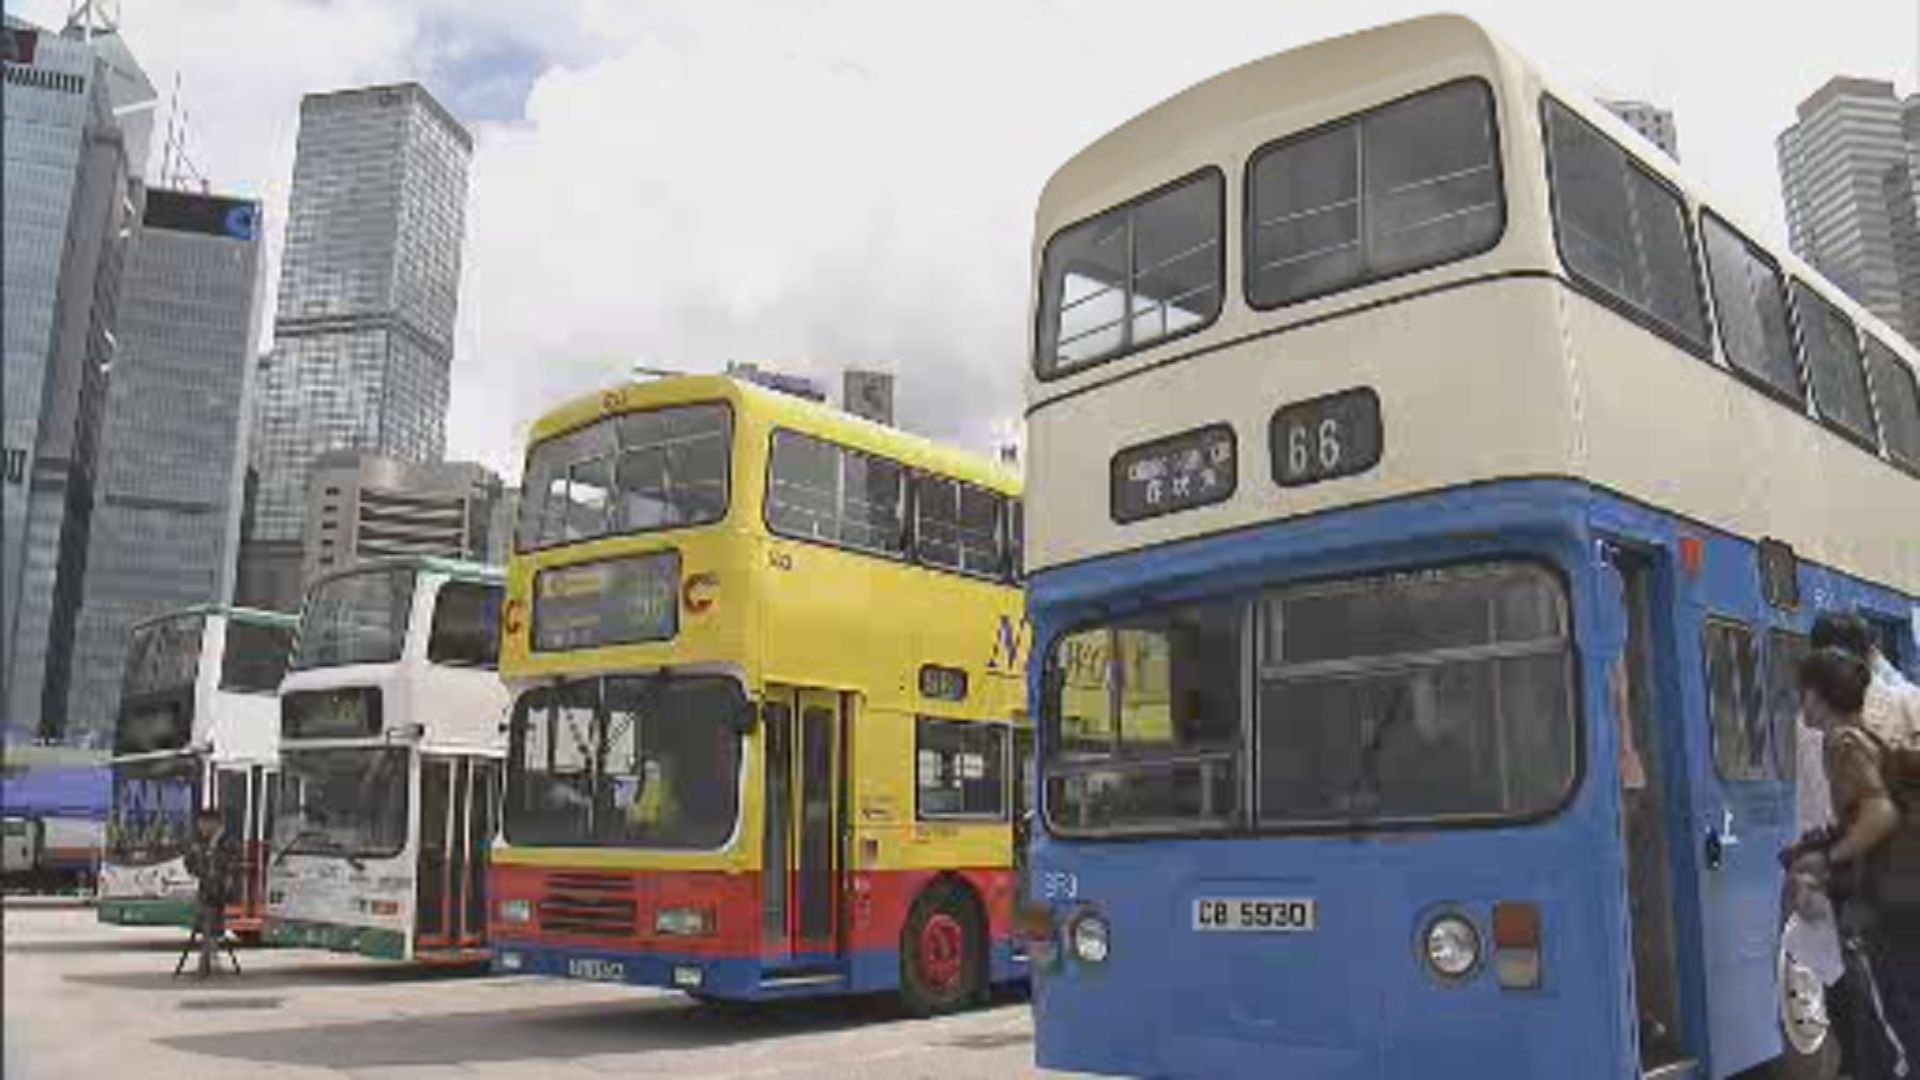 城巴展多款退役巴士 藍白色珍寶巴士最經典